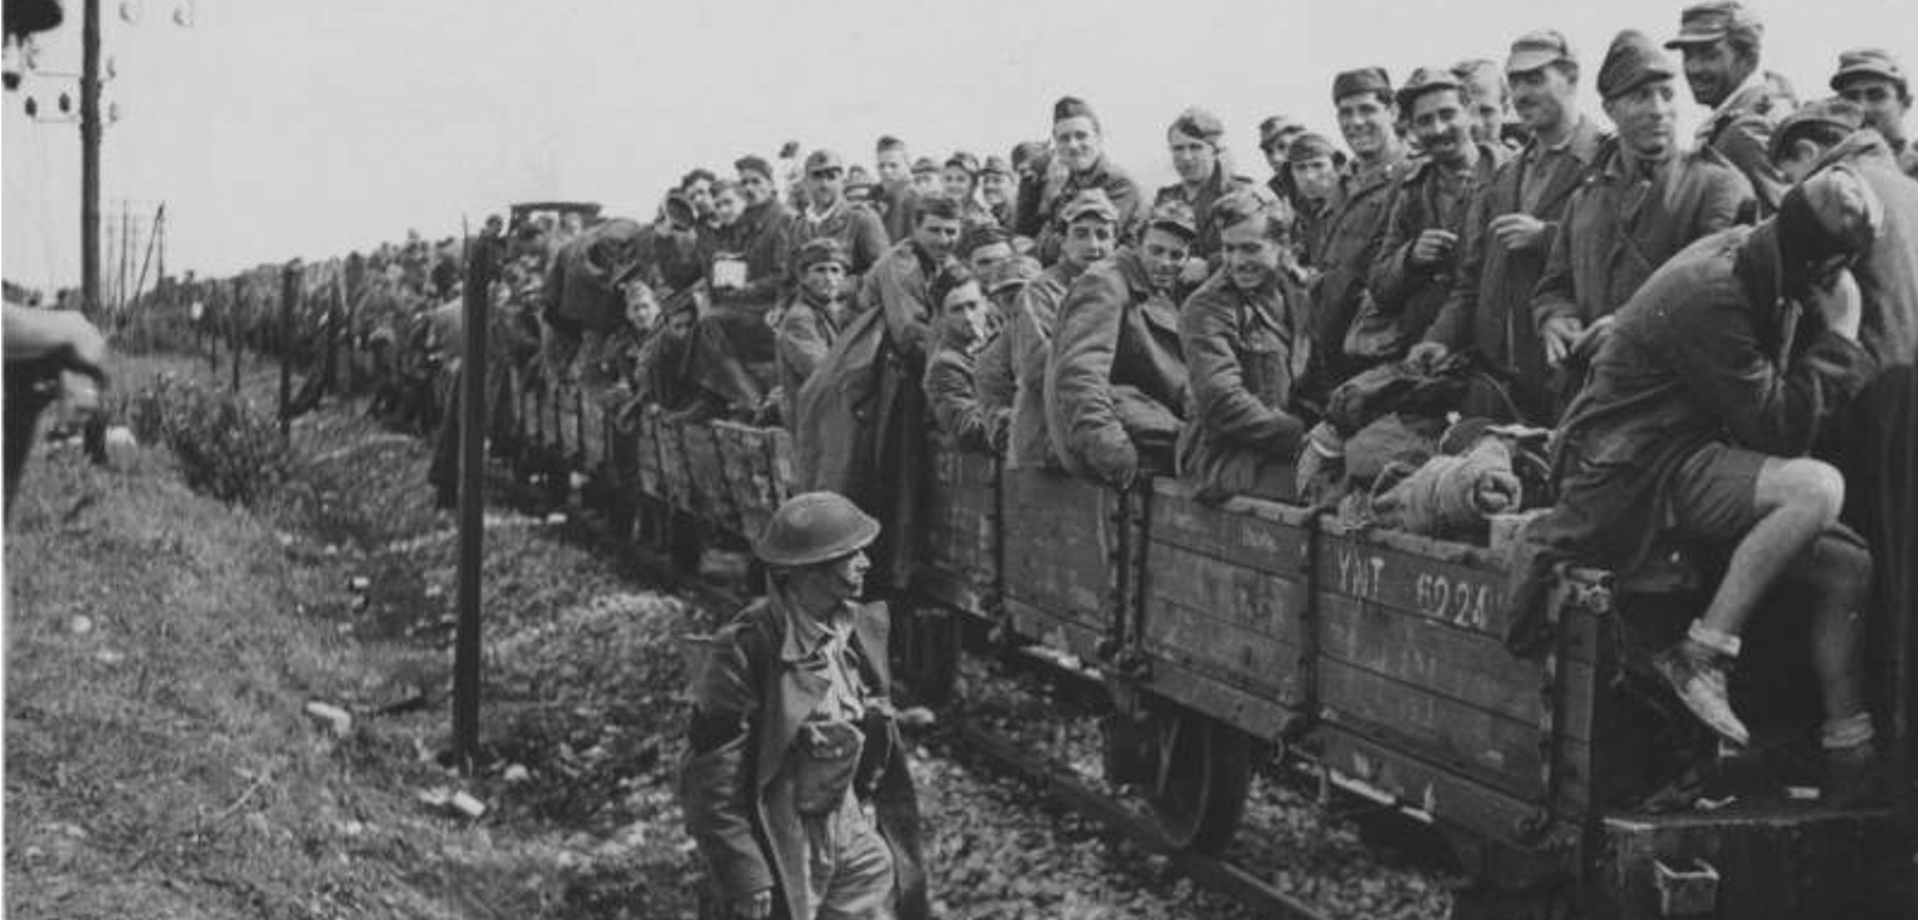 Сколько год был в плену. Американская ЖД платформа 1943г. Вагоны концлагерей 1942-1943. Итальянские солдаты 1943 год плен.